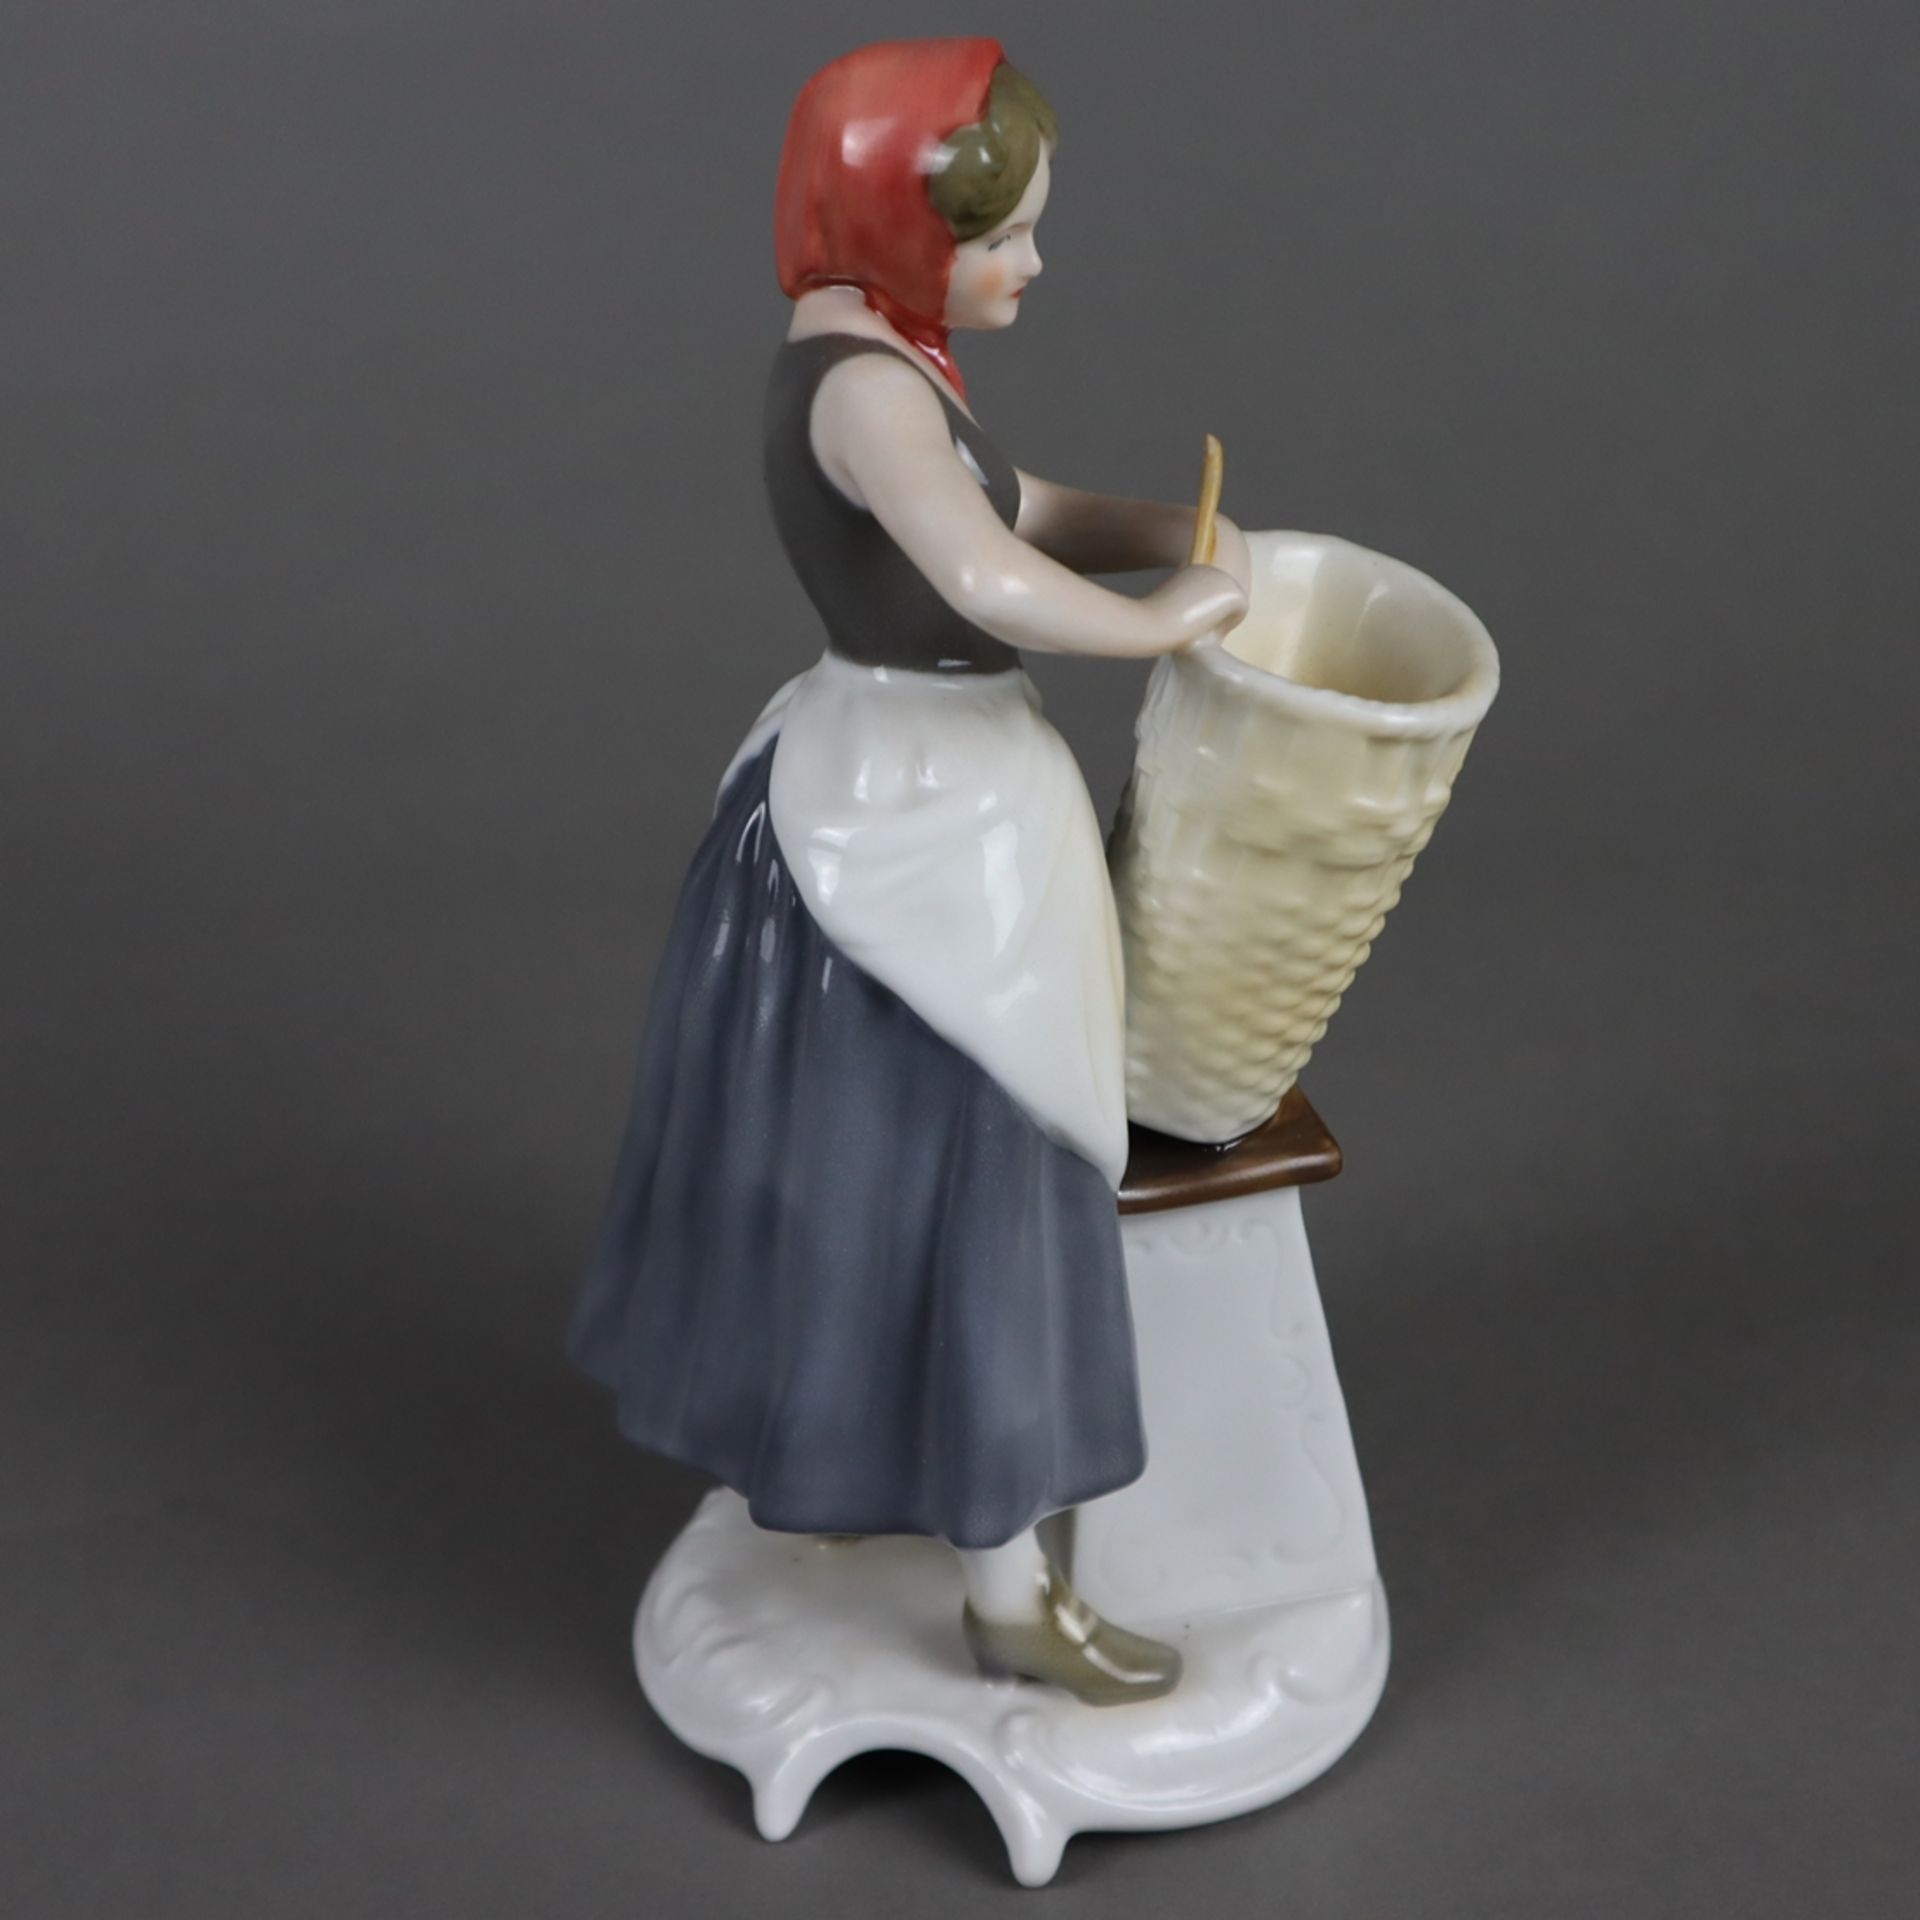 Porzellanfigur "Korbflechterin" - Goebel, Modell-Nr.16 053 aus der Handwerker-Serie, Porzellan, pol - Image 4 of 8